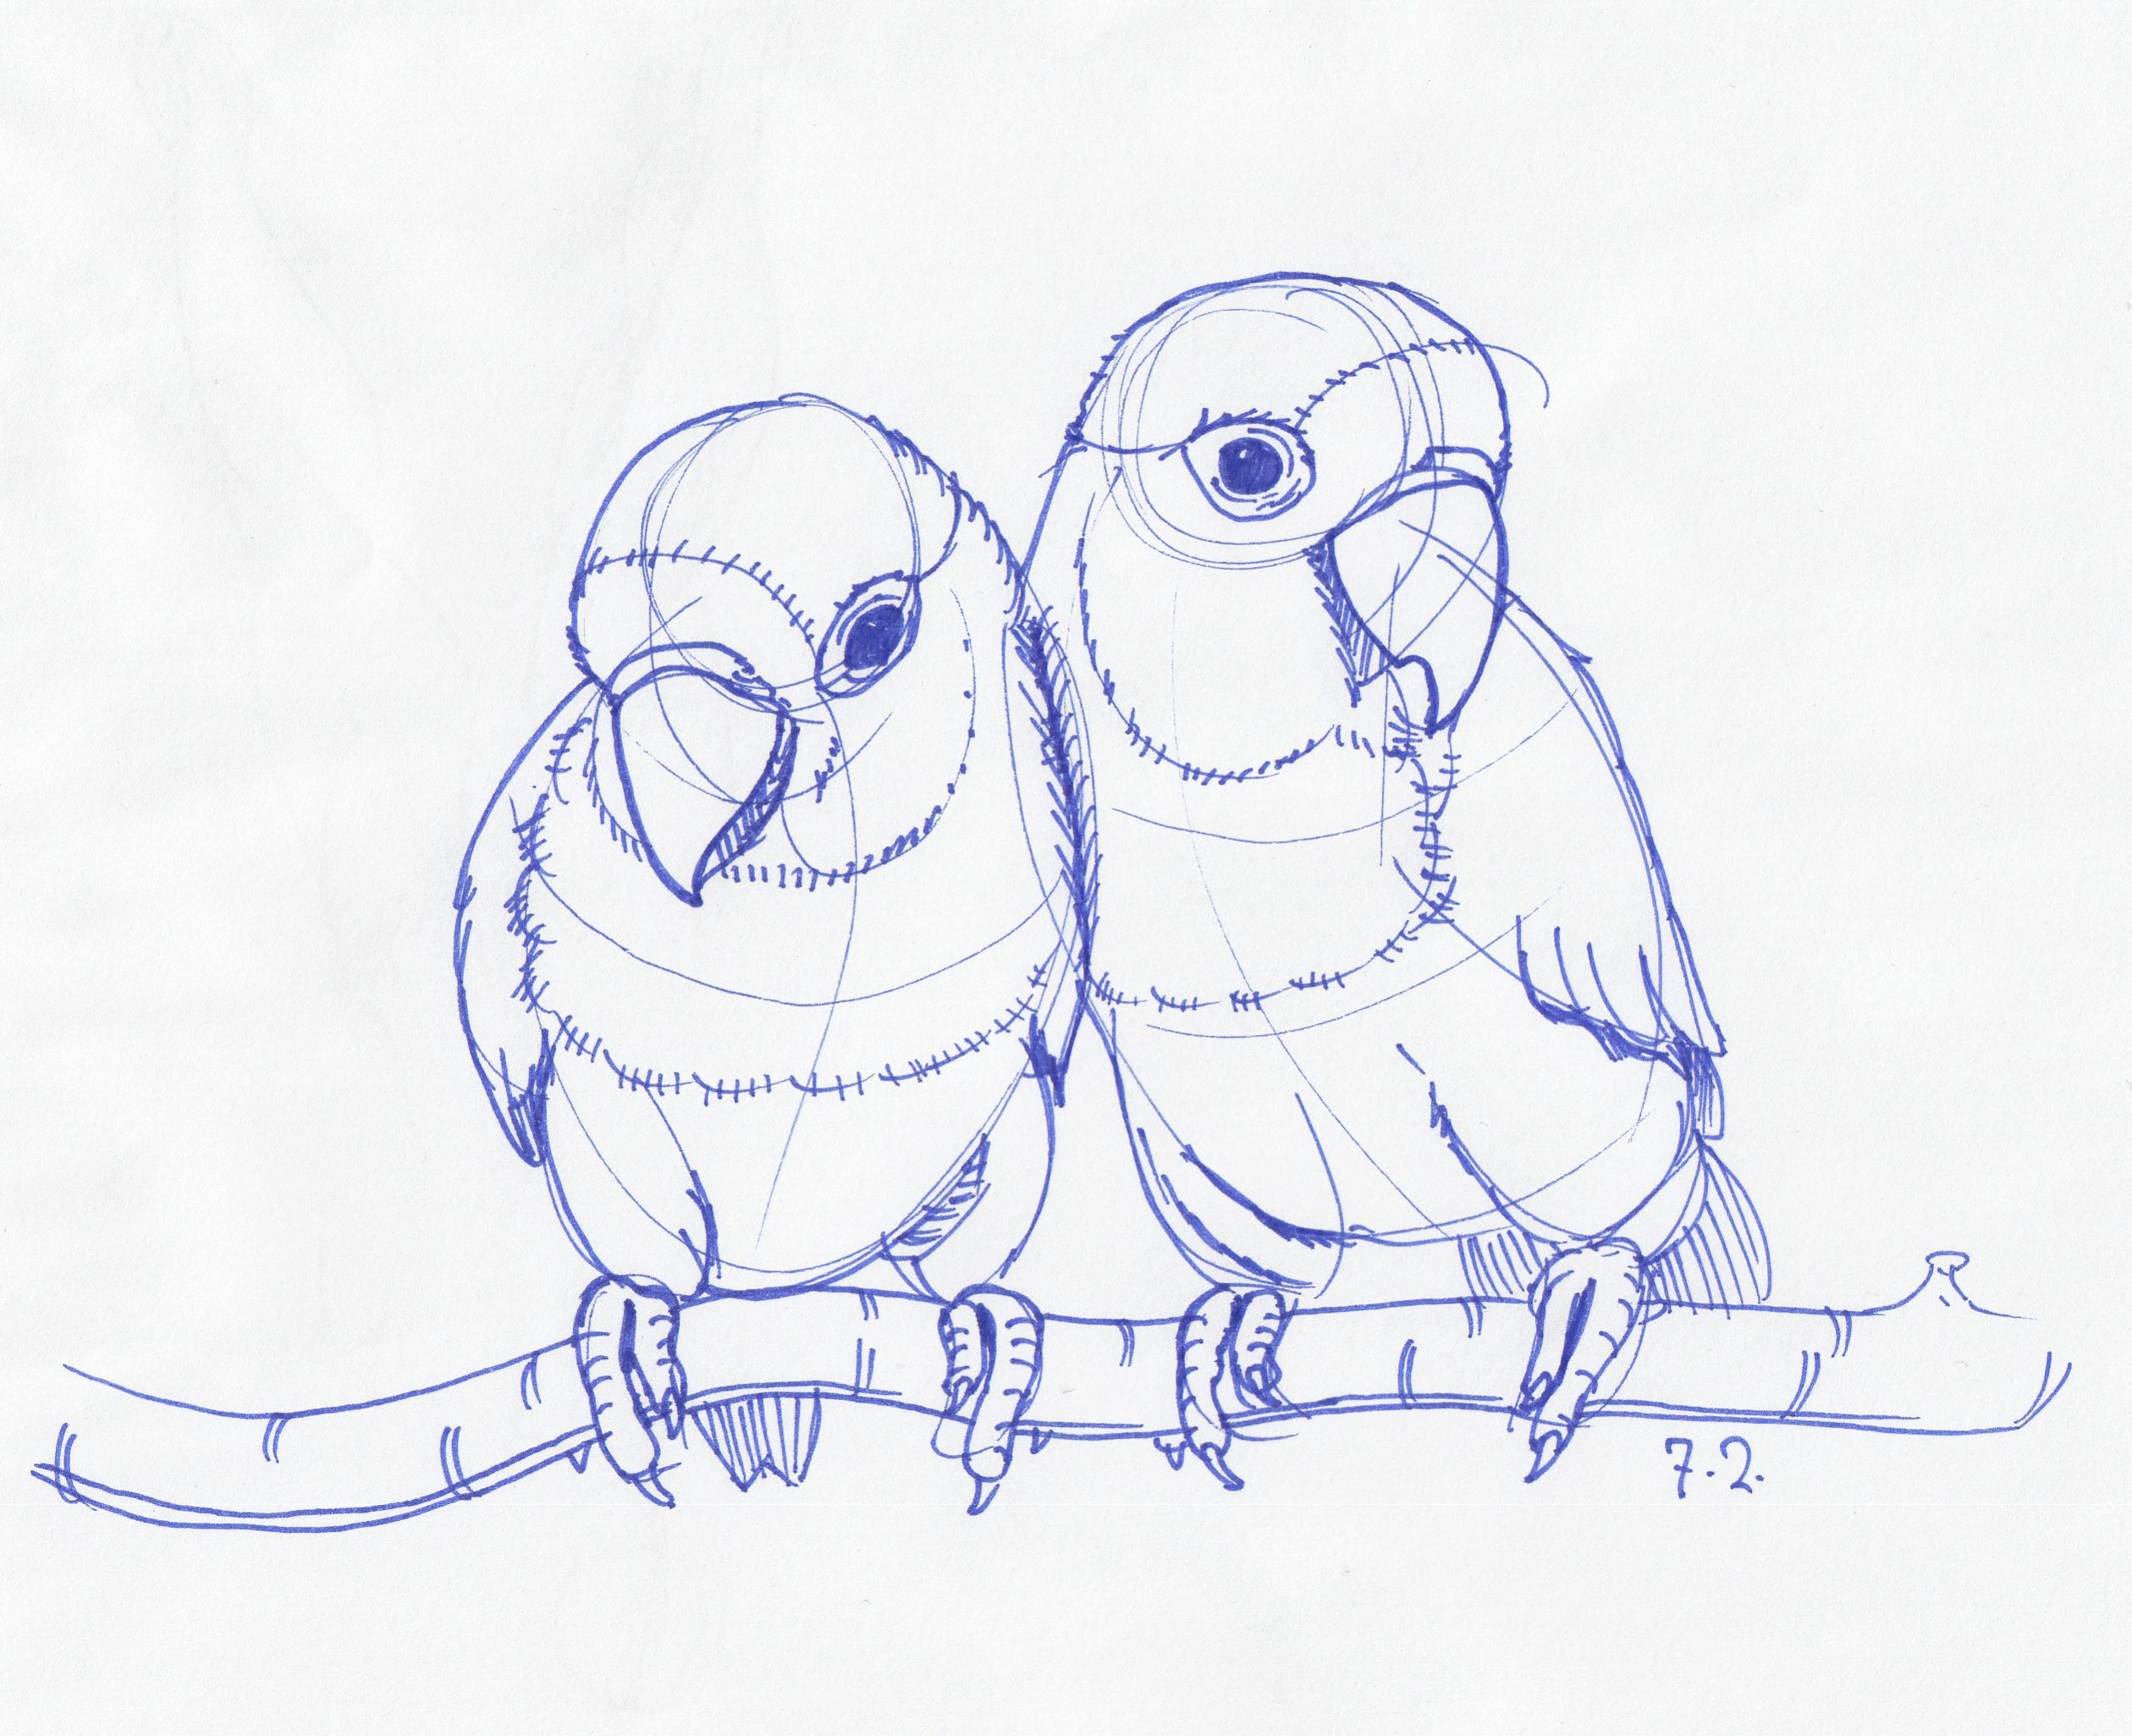 easy bird sketch